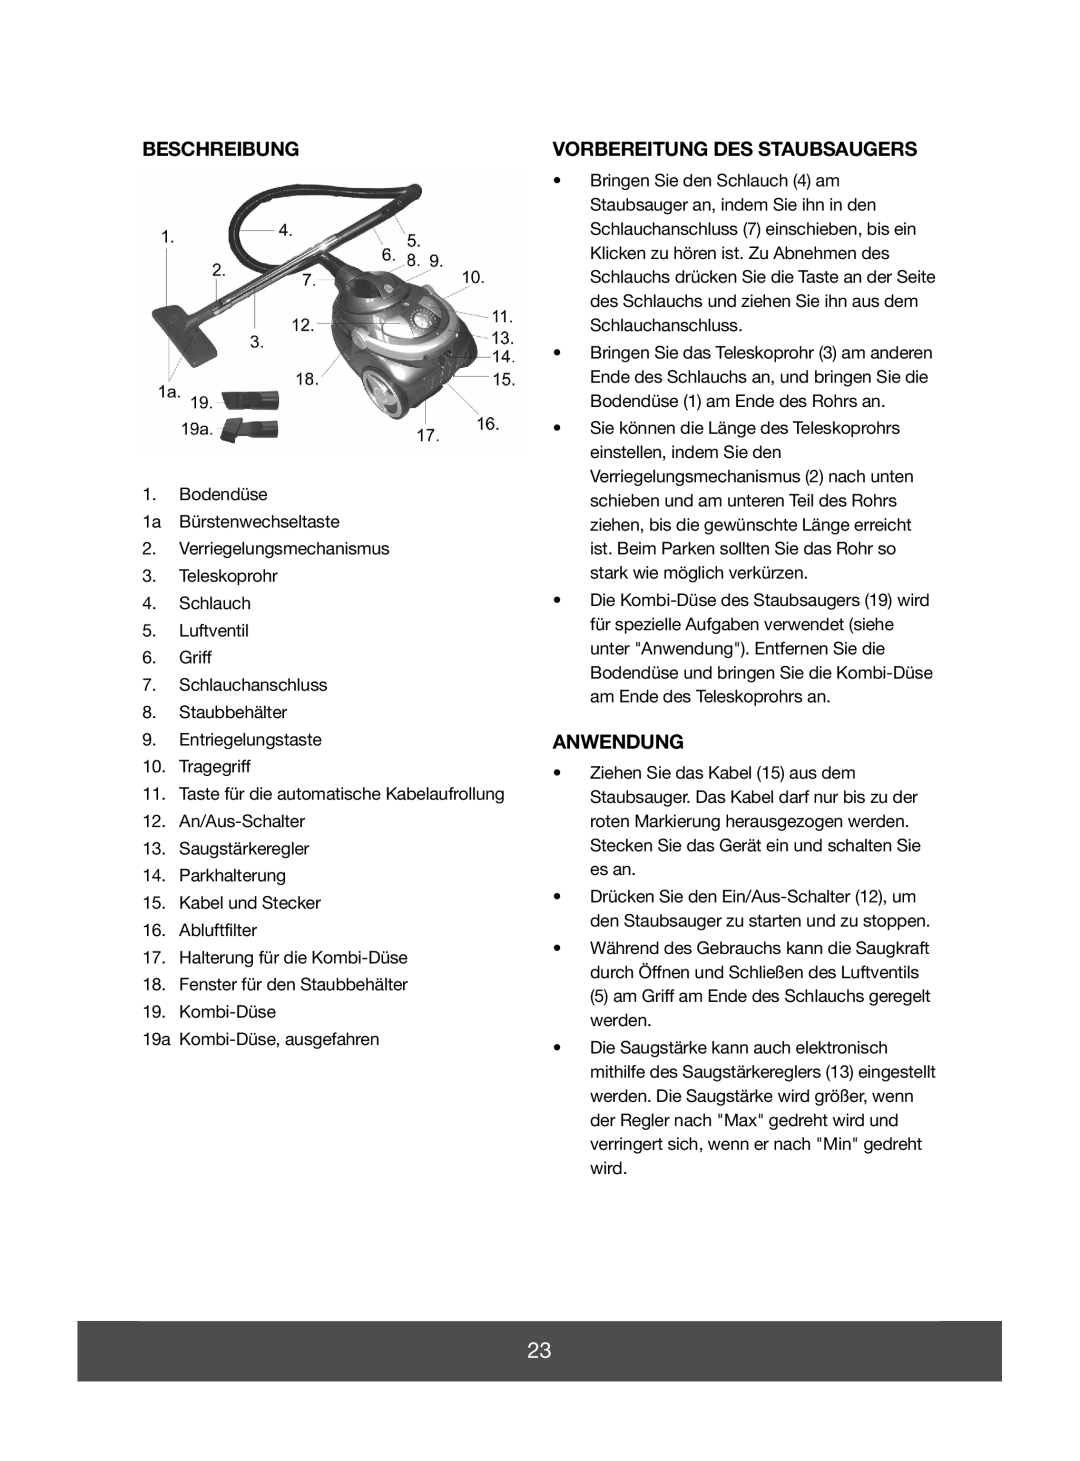 Melissa 640-048 manual Beschreibung, Vorbereitung Des Staubsaugers, Anwendung 